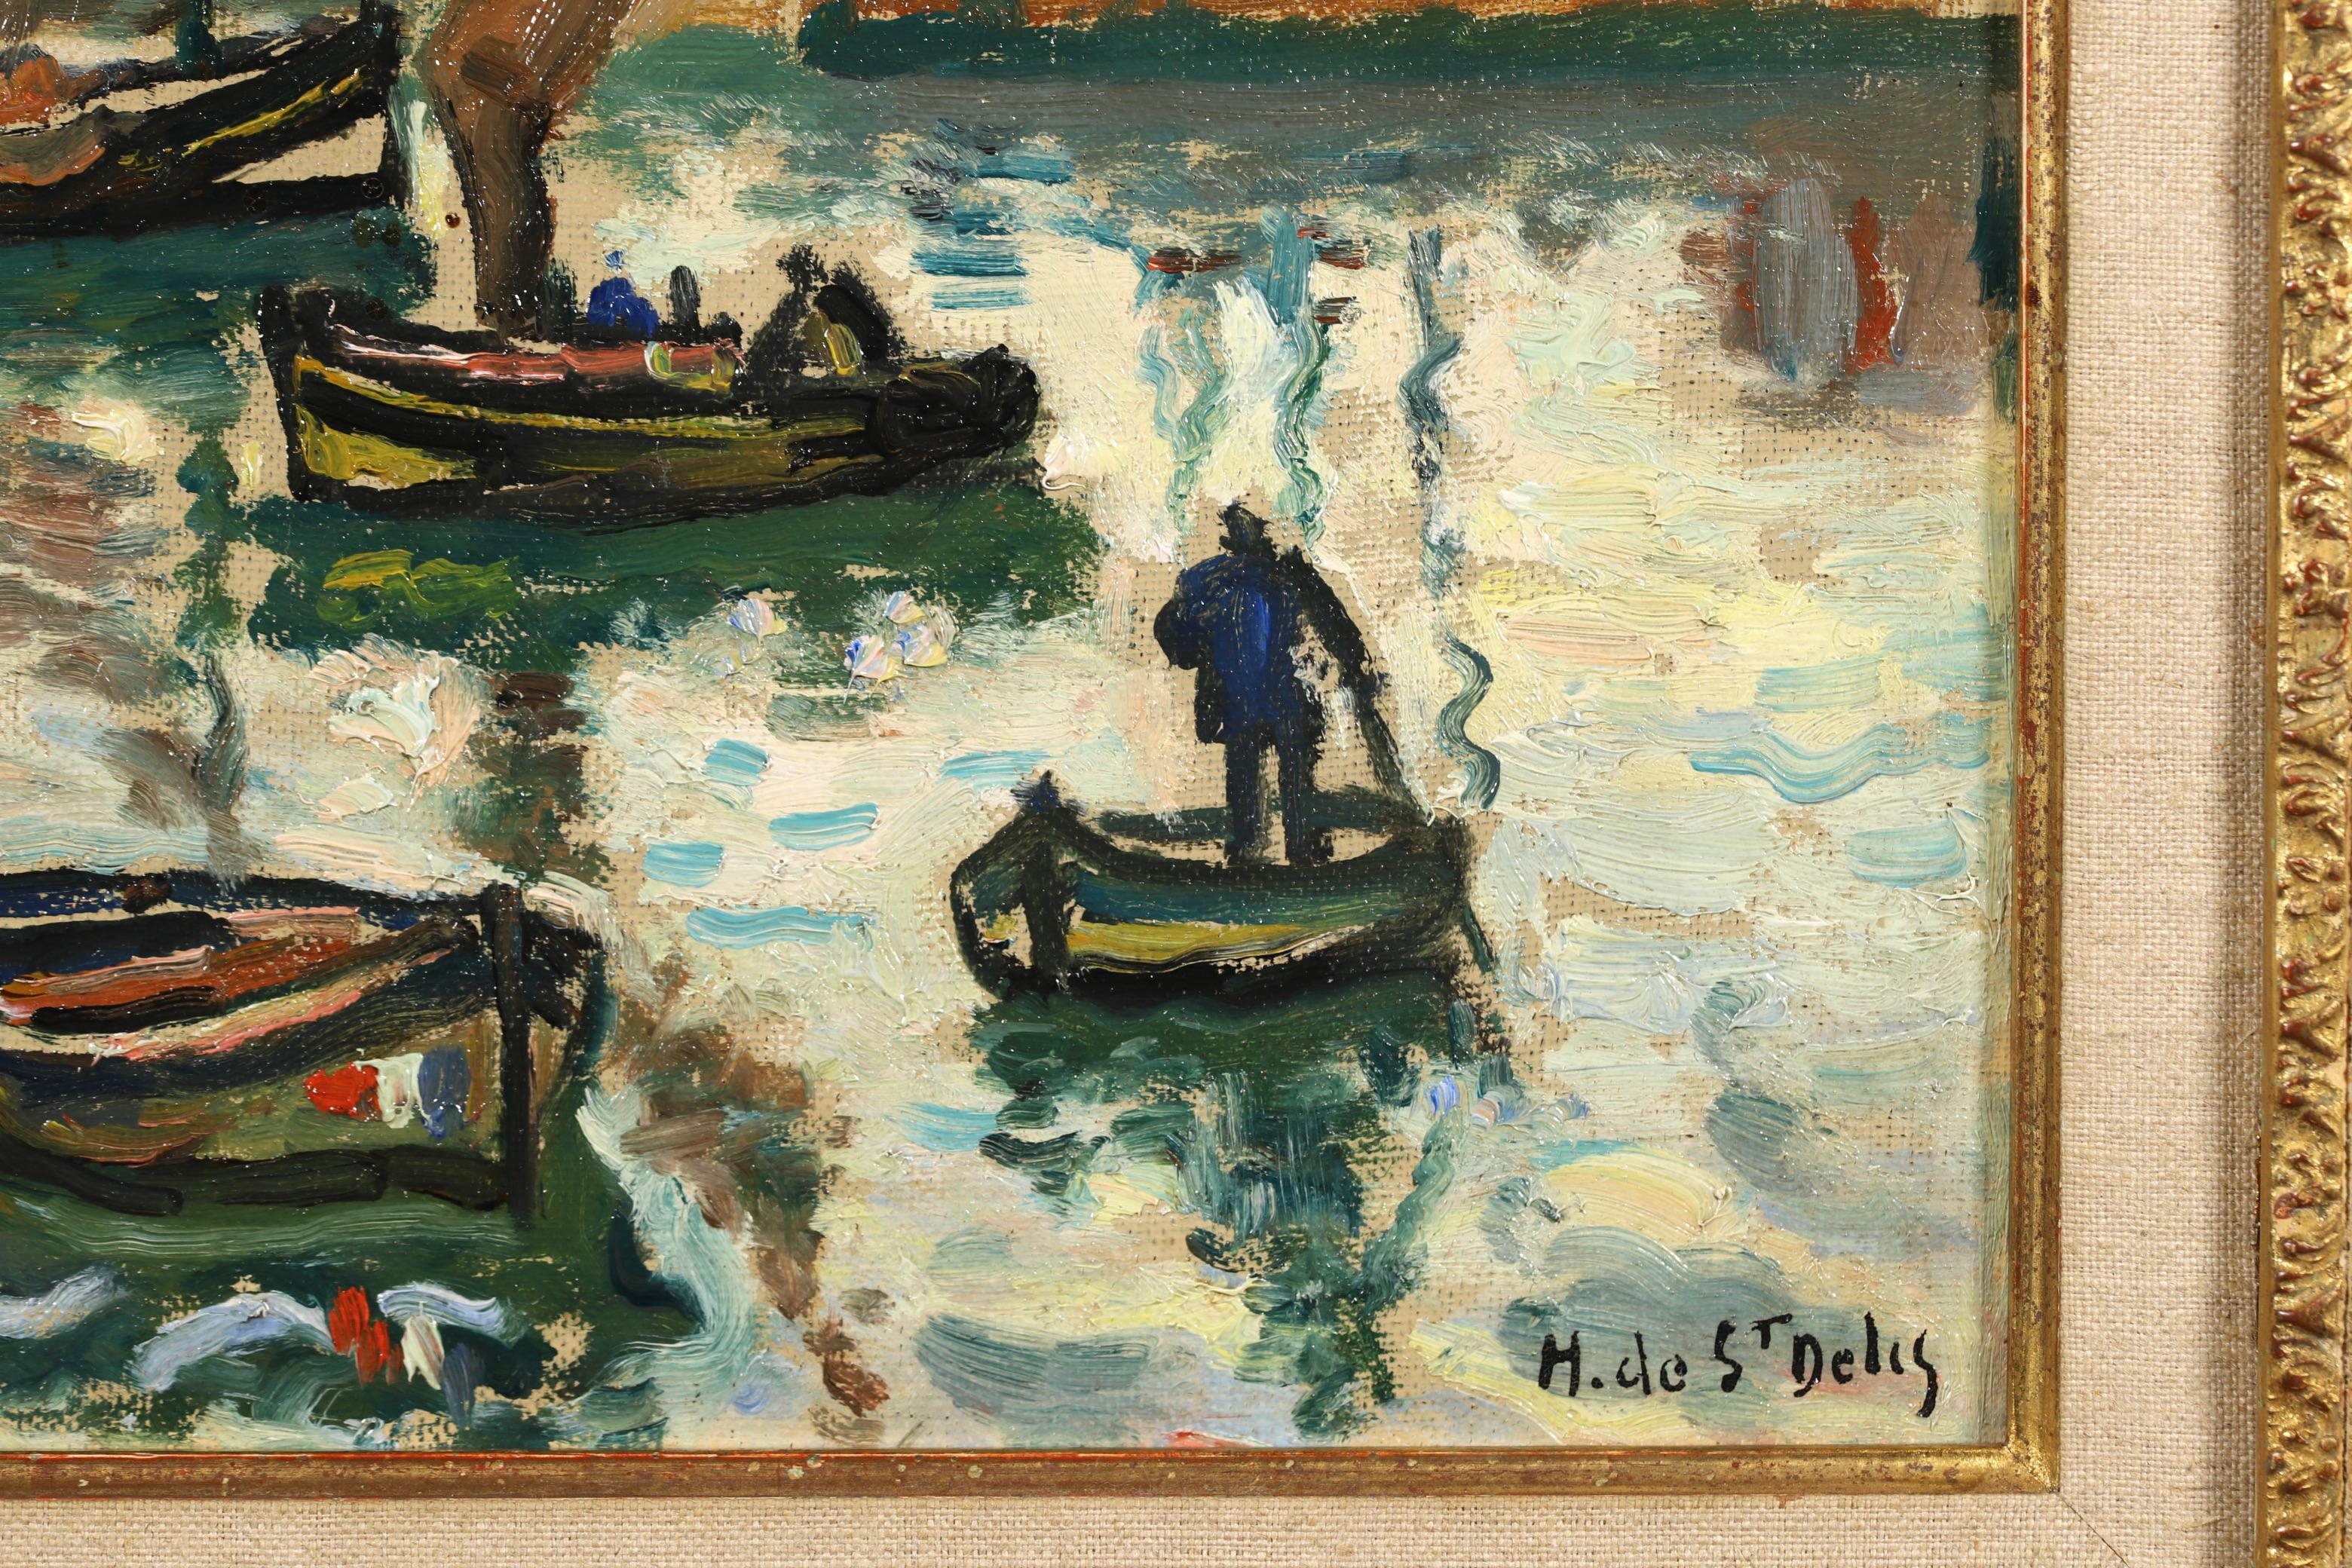 Huile sur panneau signée représentant des personnages dans un paysage marin vers 1910 par le peintre post impressionniste français Henri Liénard de Saint-Délis. L'œuvre représente des voiliers dans le port arborant le drapeau tricolore